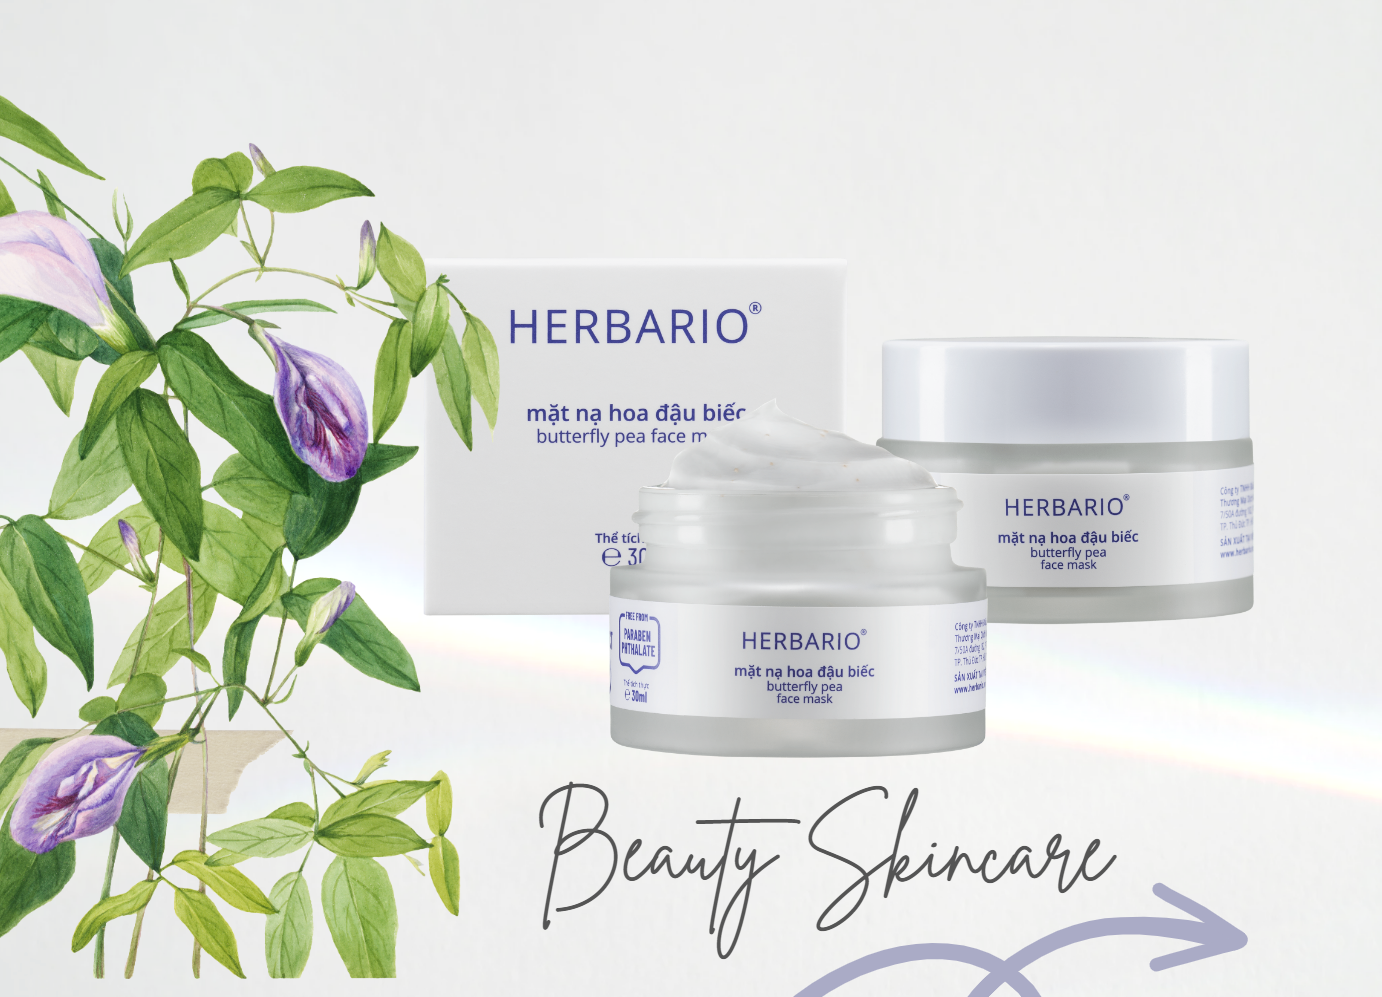 Bộ sản phẩm mặt nạ hoa đậu biếc mới ra mắt nhà Herbario